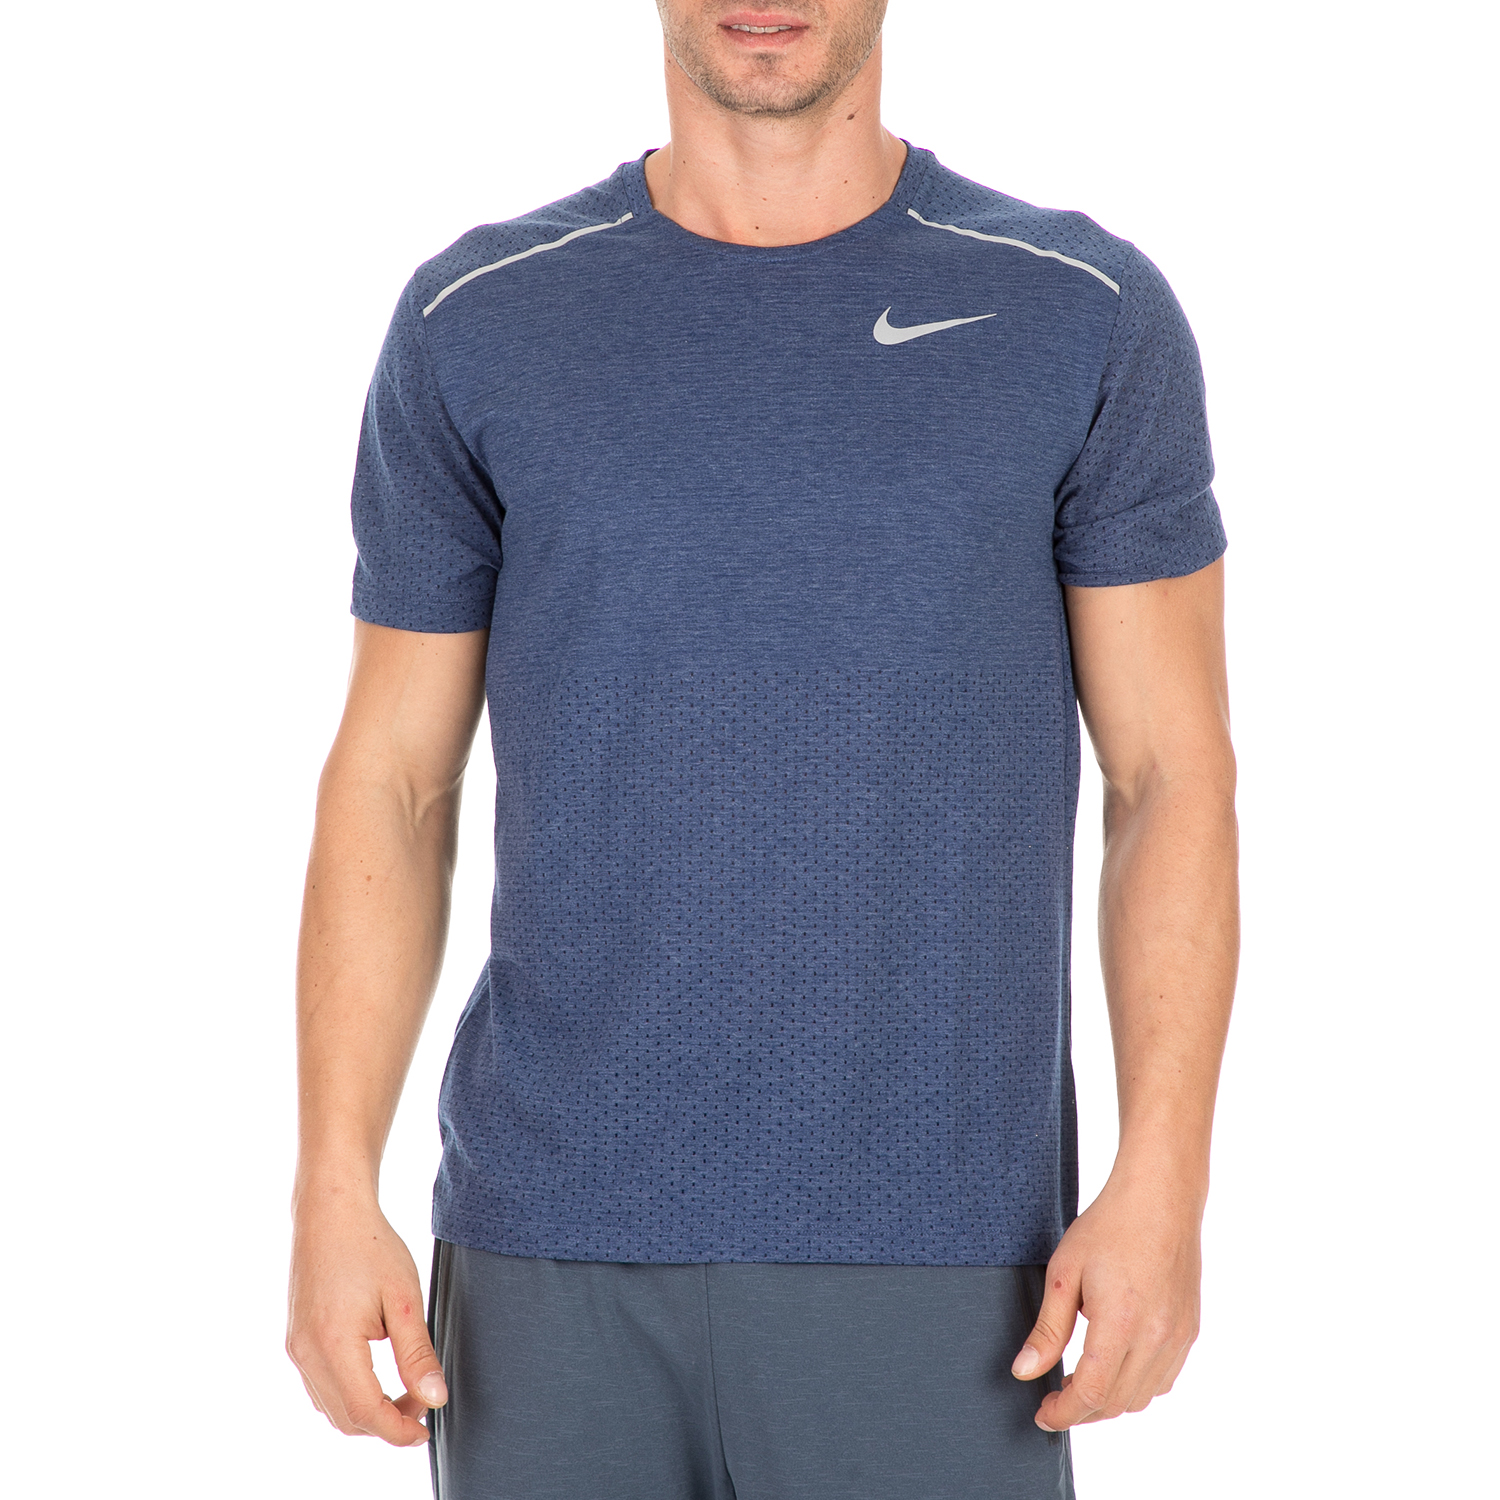 Ανδρικά/Ρούχα/Αθλητικά/T-shirt NIKE - Ανδρικό t-shirt NIKE RISE 365 μπλε